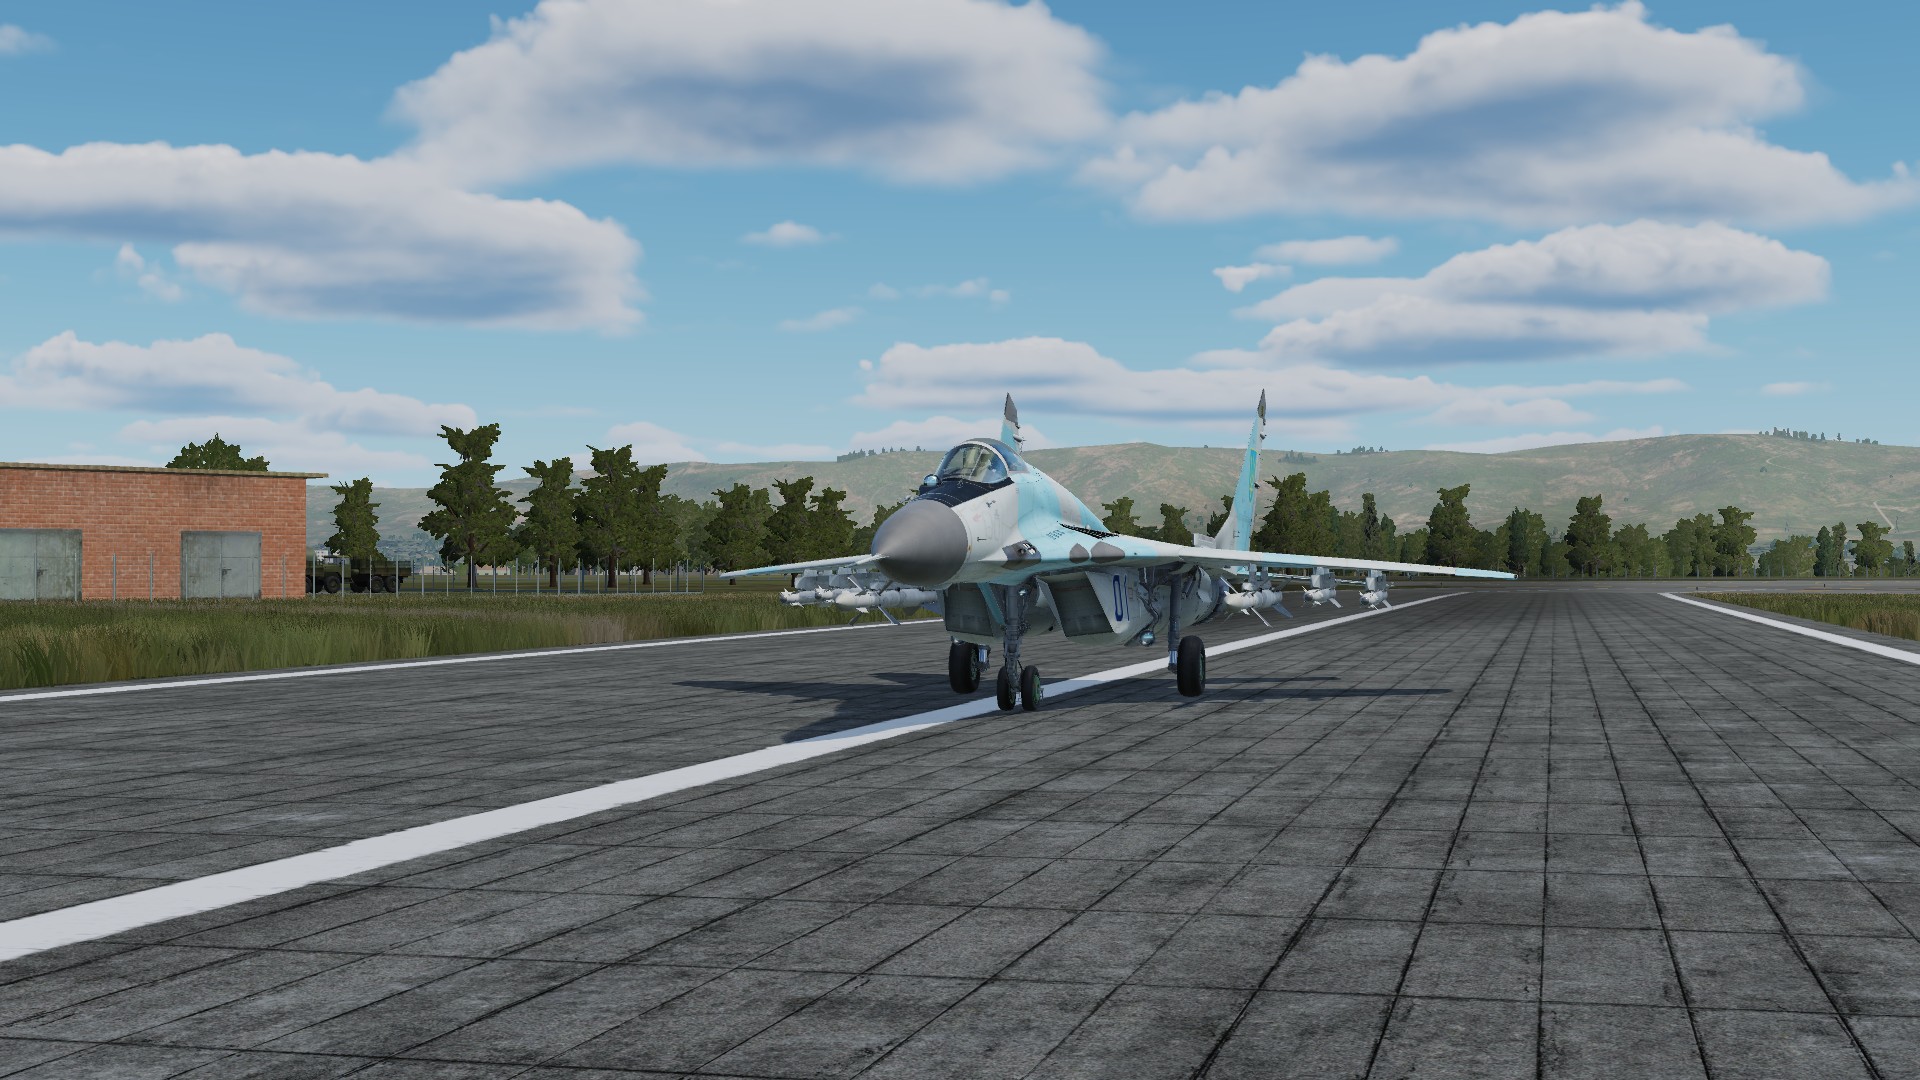 МиГ-29 ВВС Украины с Бельбека (Борт 01). MiG-29 Ukraine Air Force from Belbek (Bort 01).